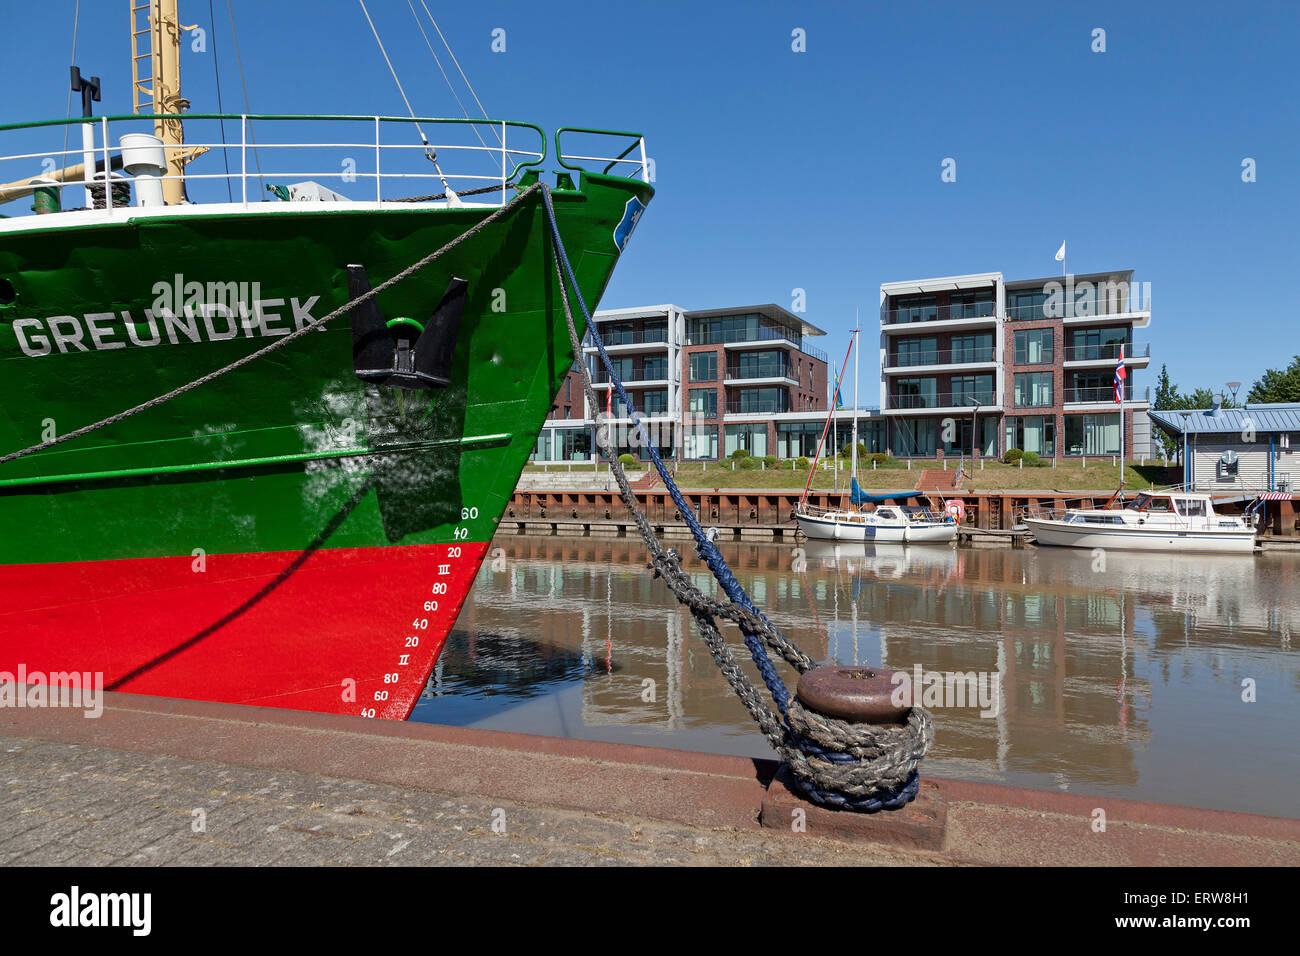 Museum ship 'Greundiek', Harbour City, stade, Basse-Saxe, Allemagne Banque D'Images